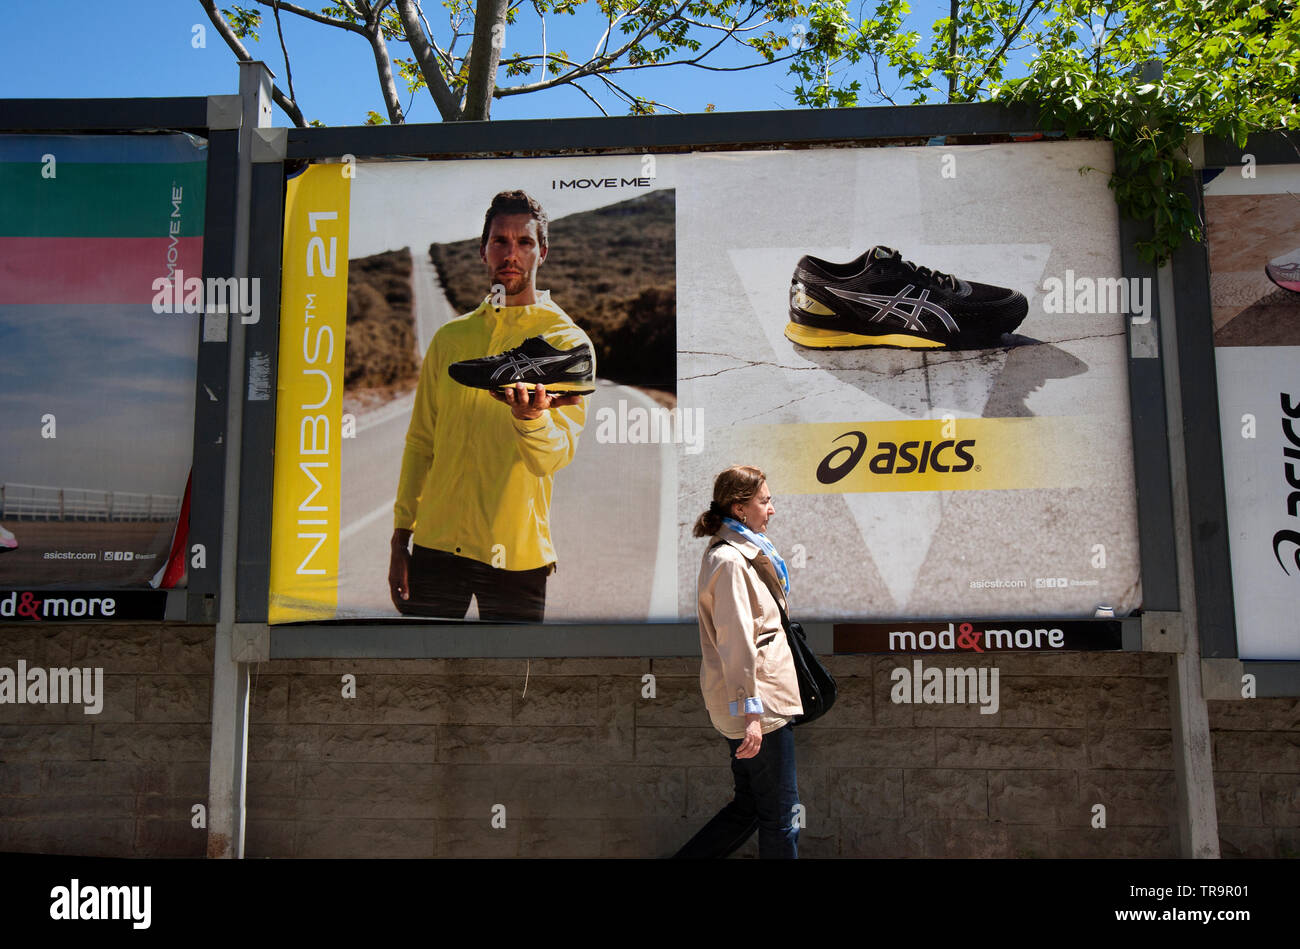 Cartel de publicidad exterior Oasics zapatos deportivos en calles de Istanbull, Turquía Foto de stock